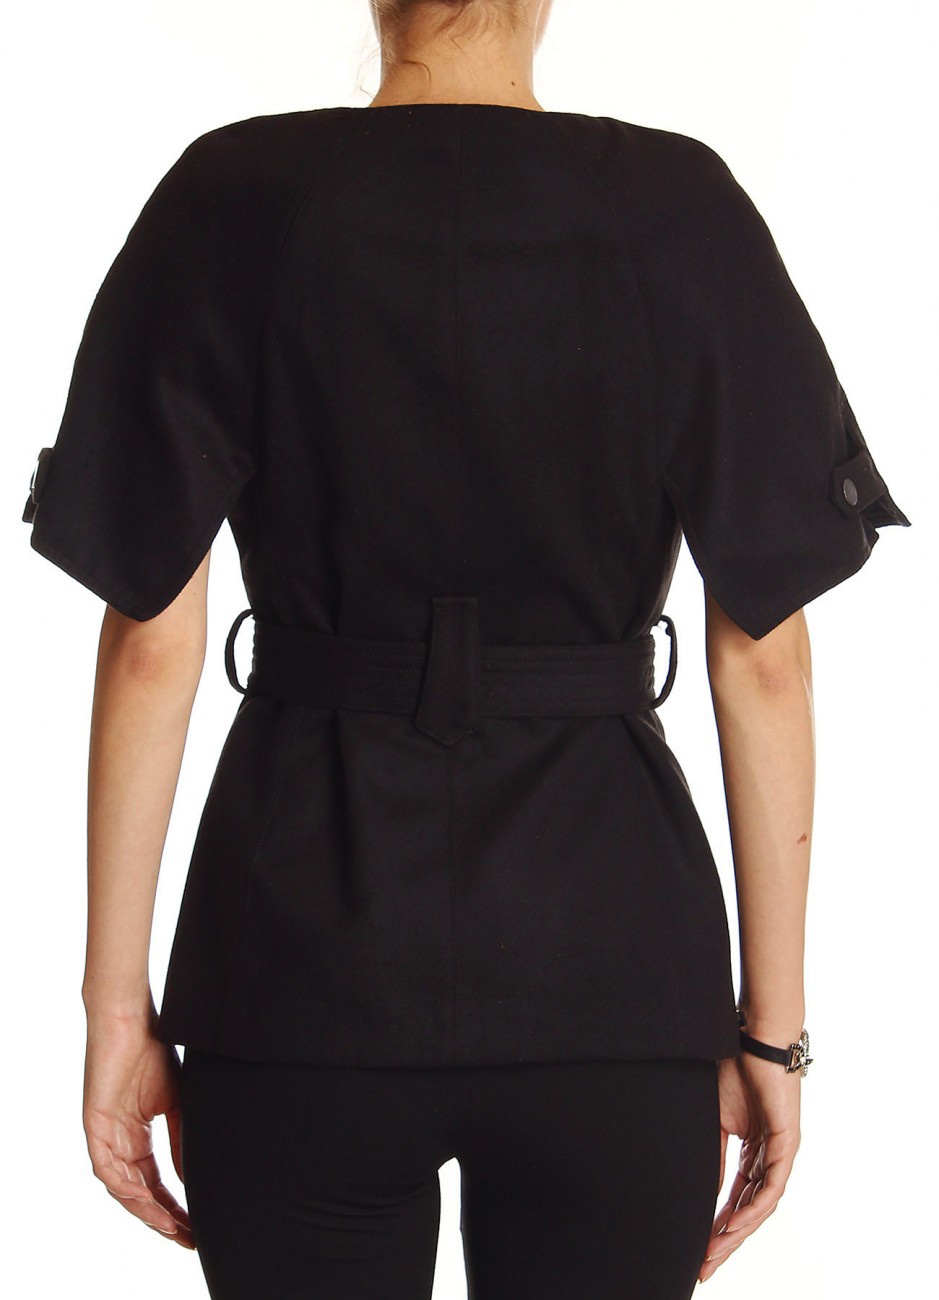 Пальто итальянского бренда FORNARINA черного цвета, размер М